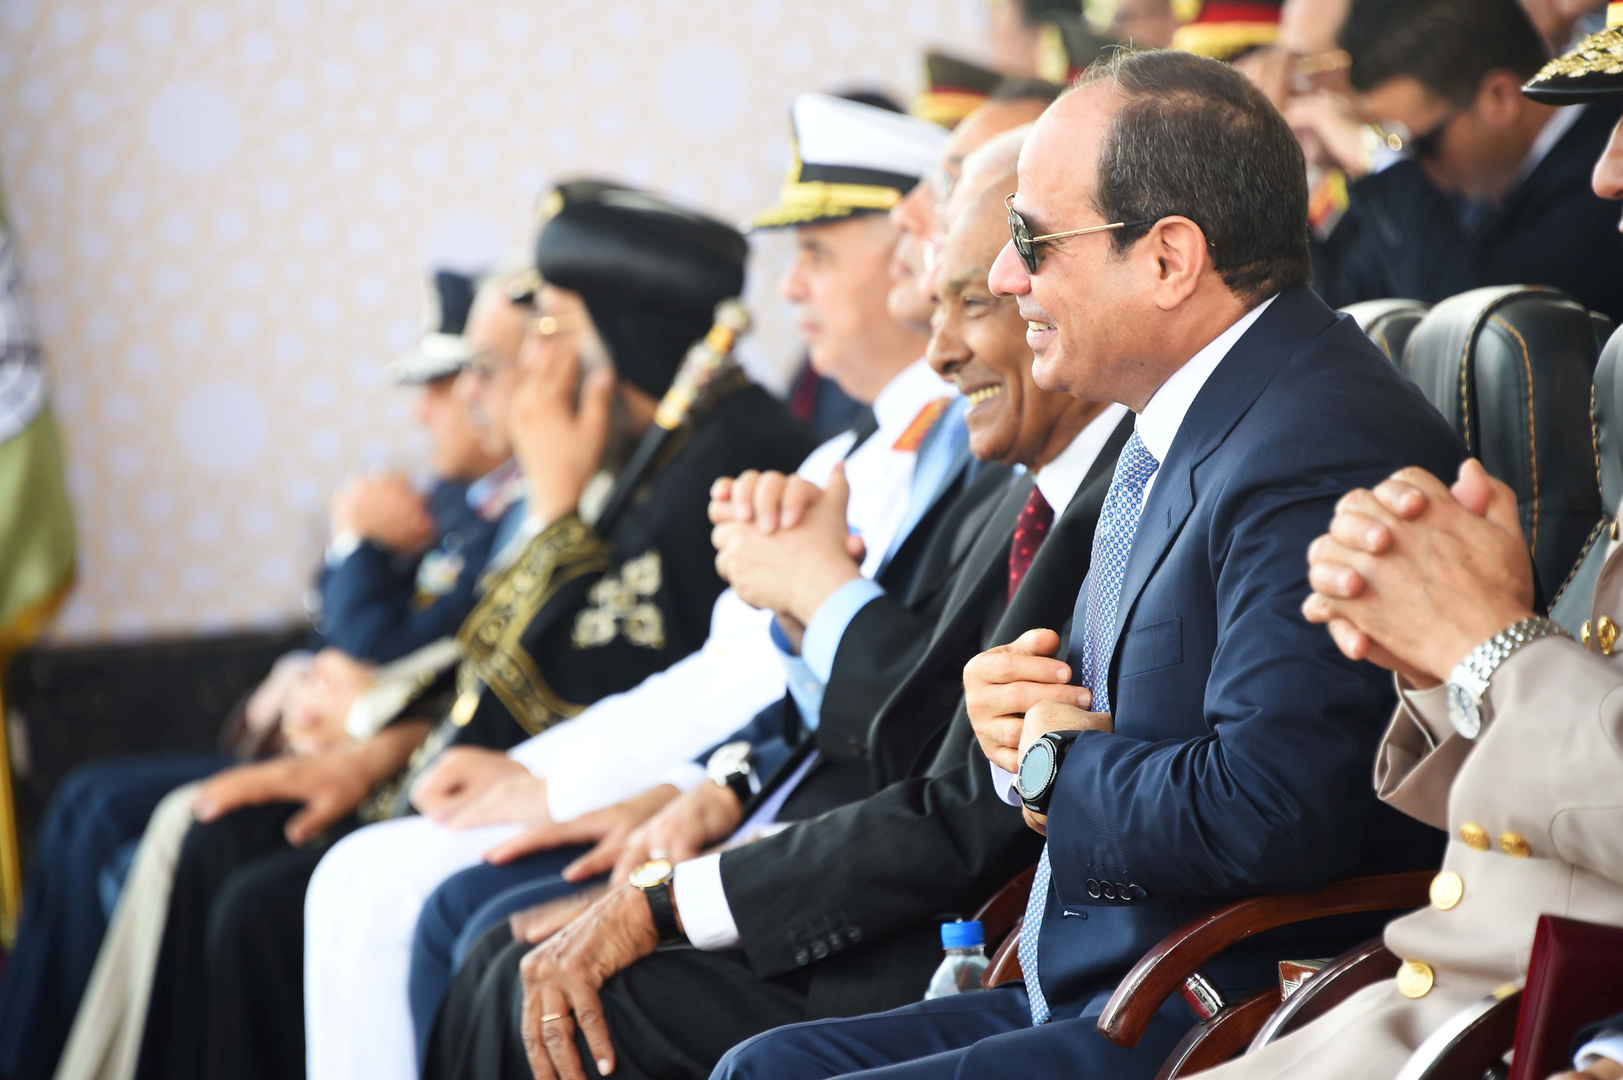 الرئيس المصري يظهر لأول مرة مرتديا كمامة.. ويوجه رسالة للشعب المصري (صورة)